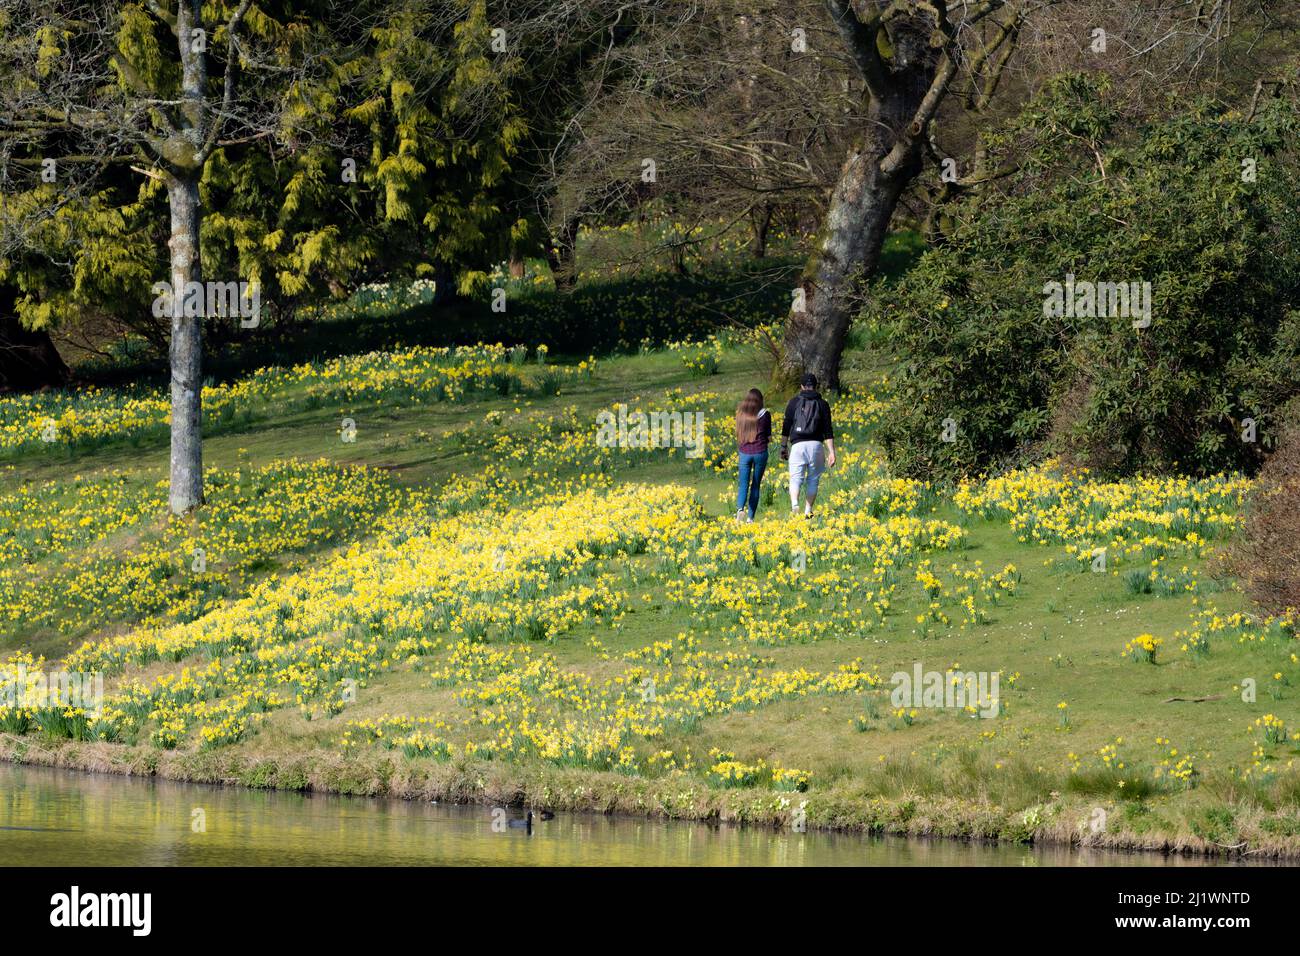 Walking through the spring daffodils at Stourhead gardens, Stourton, Wiltshire, UK Stock Photo